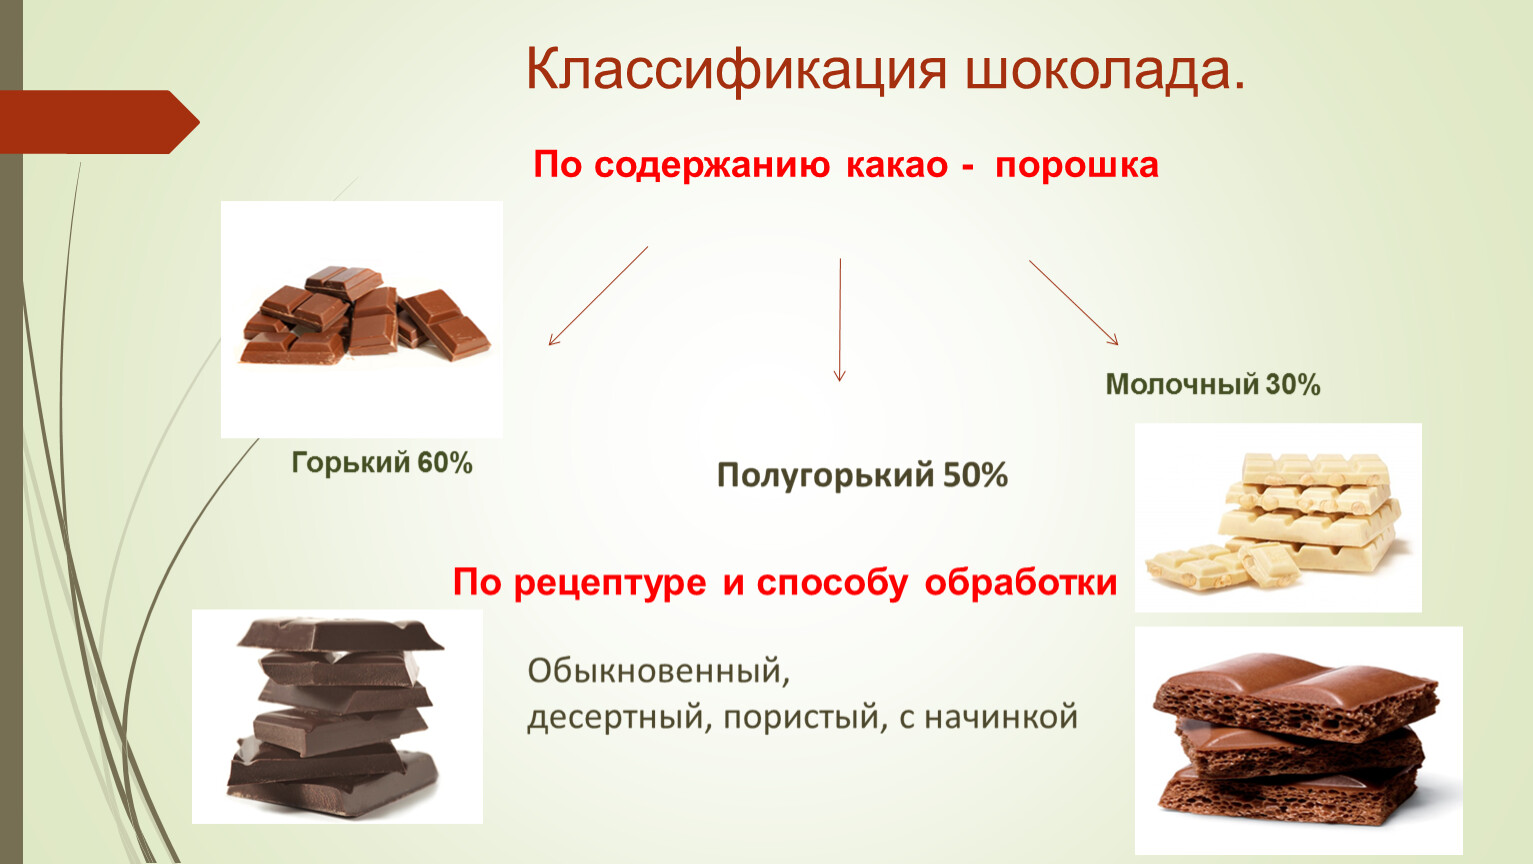 Классы шоколада